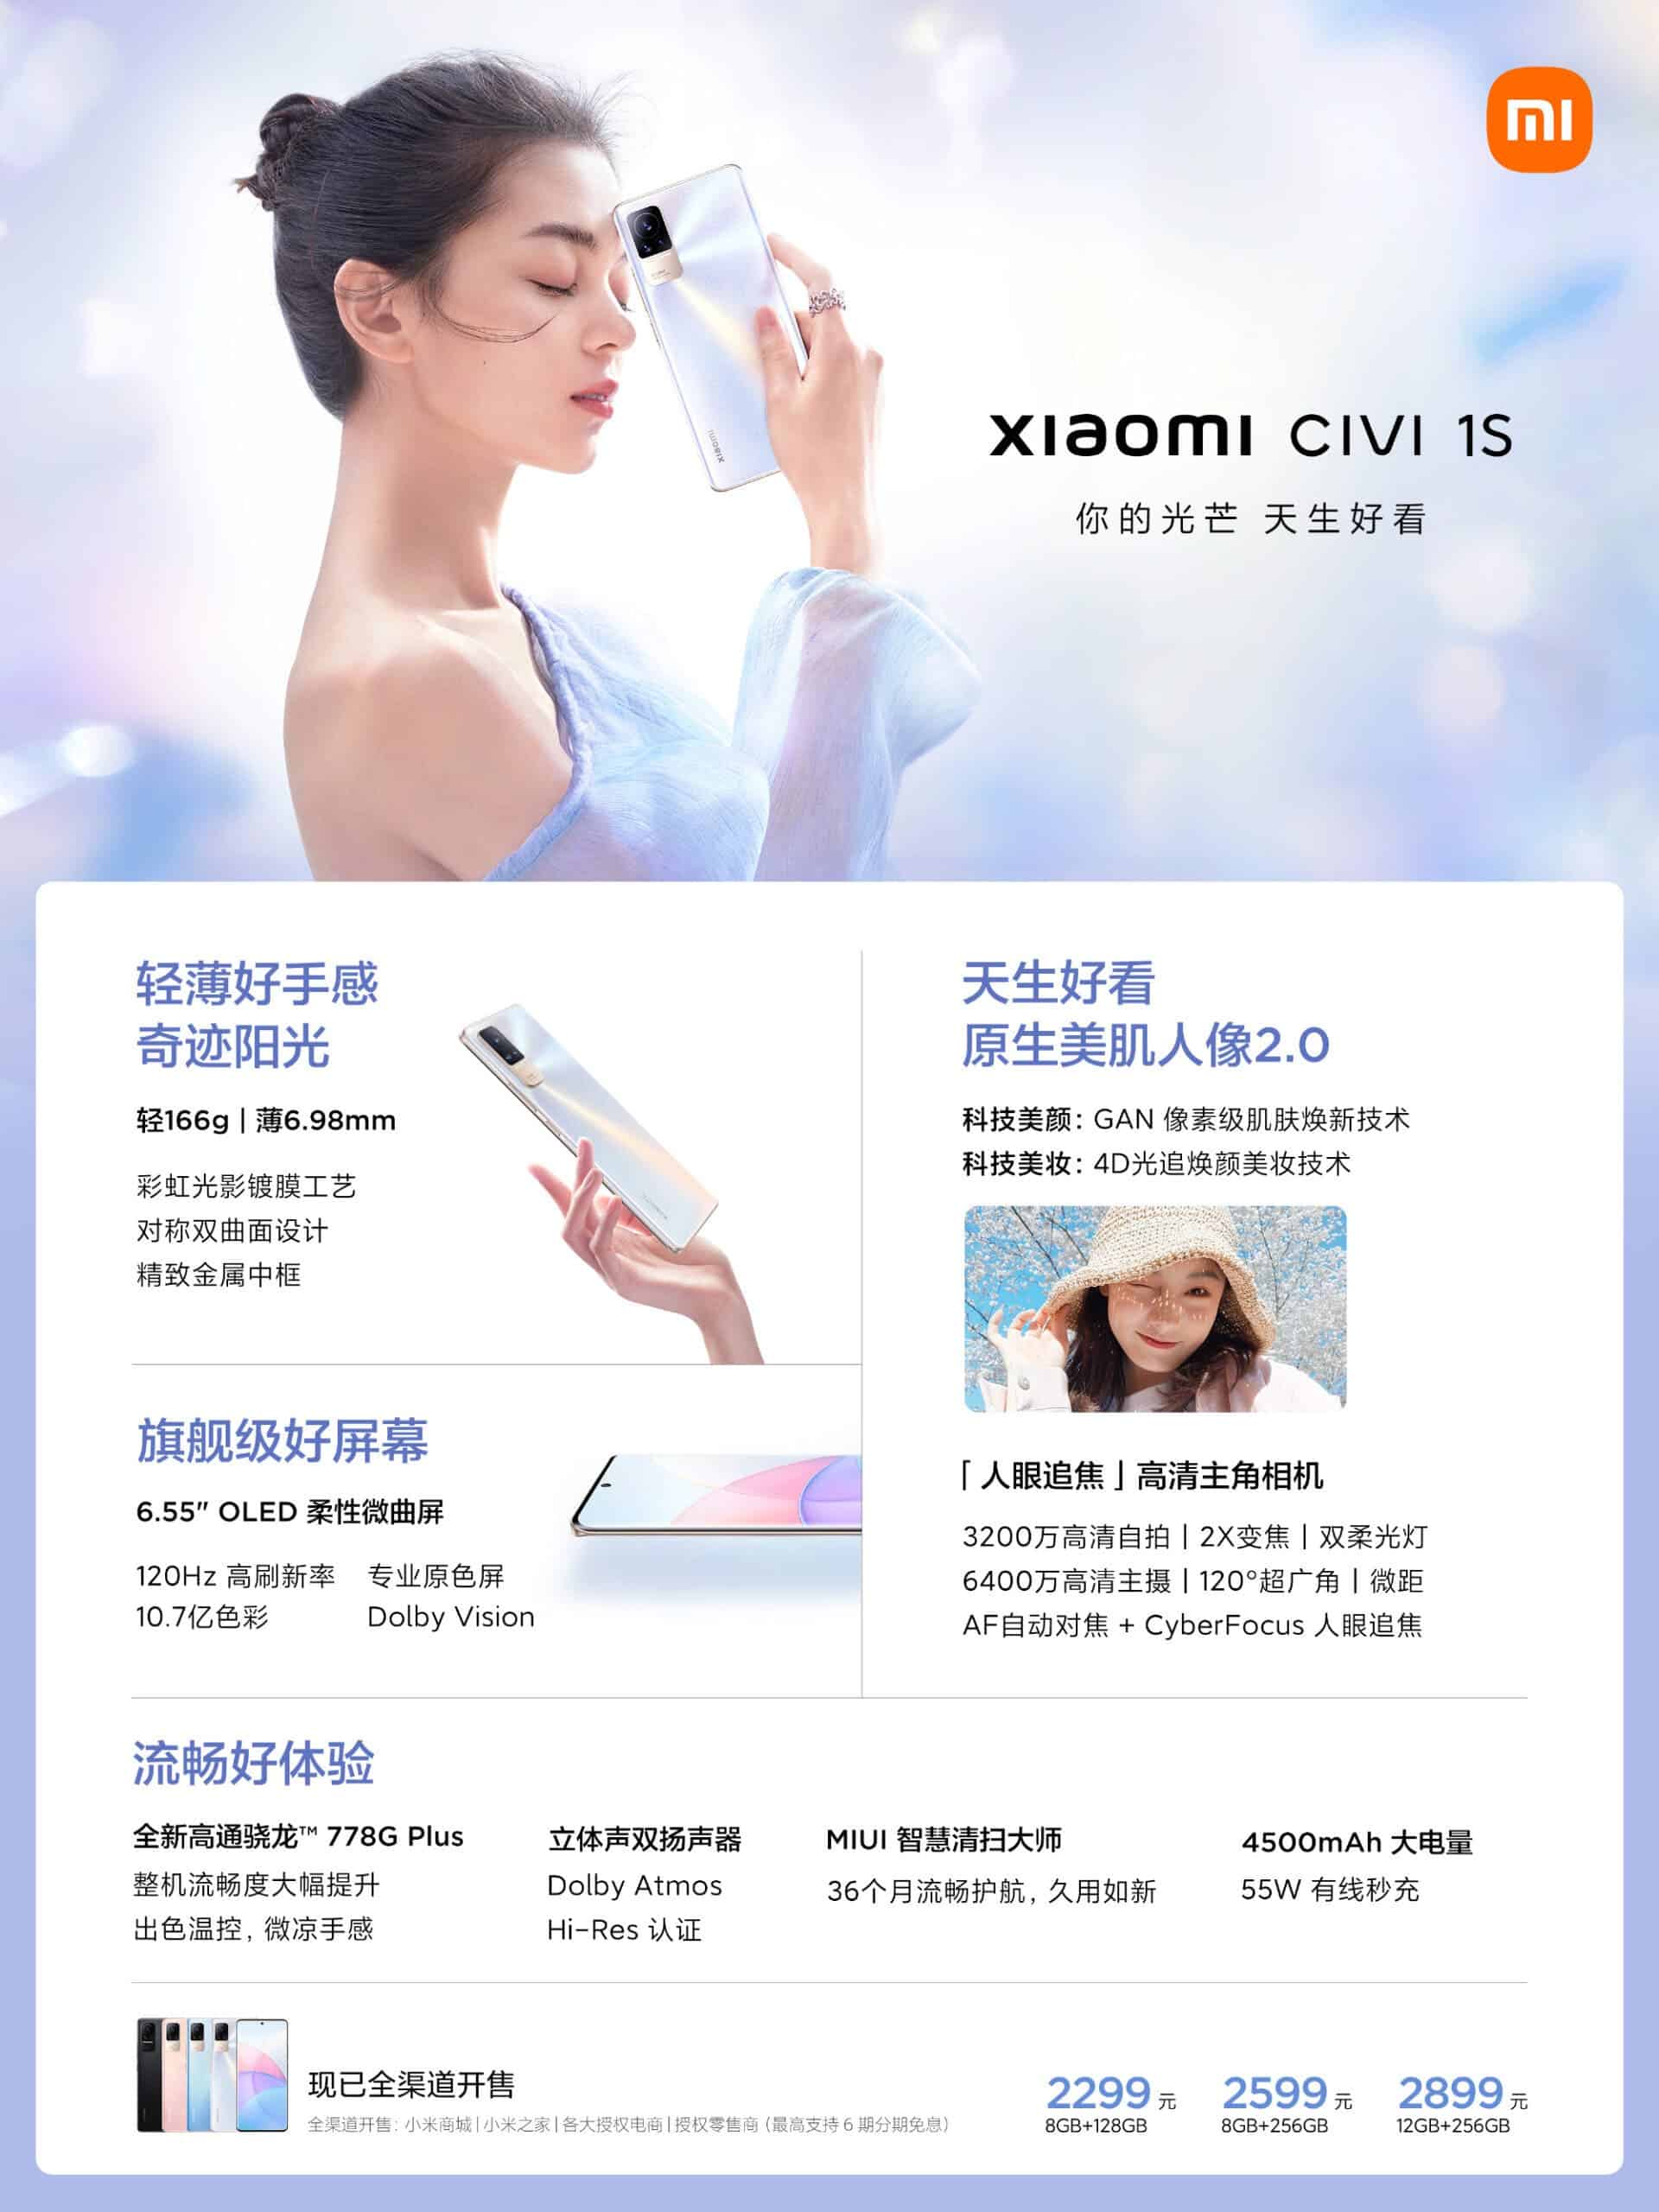 Xiaomi Civi 1S price